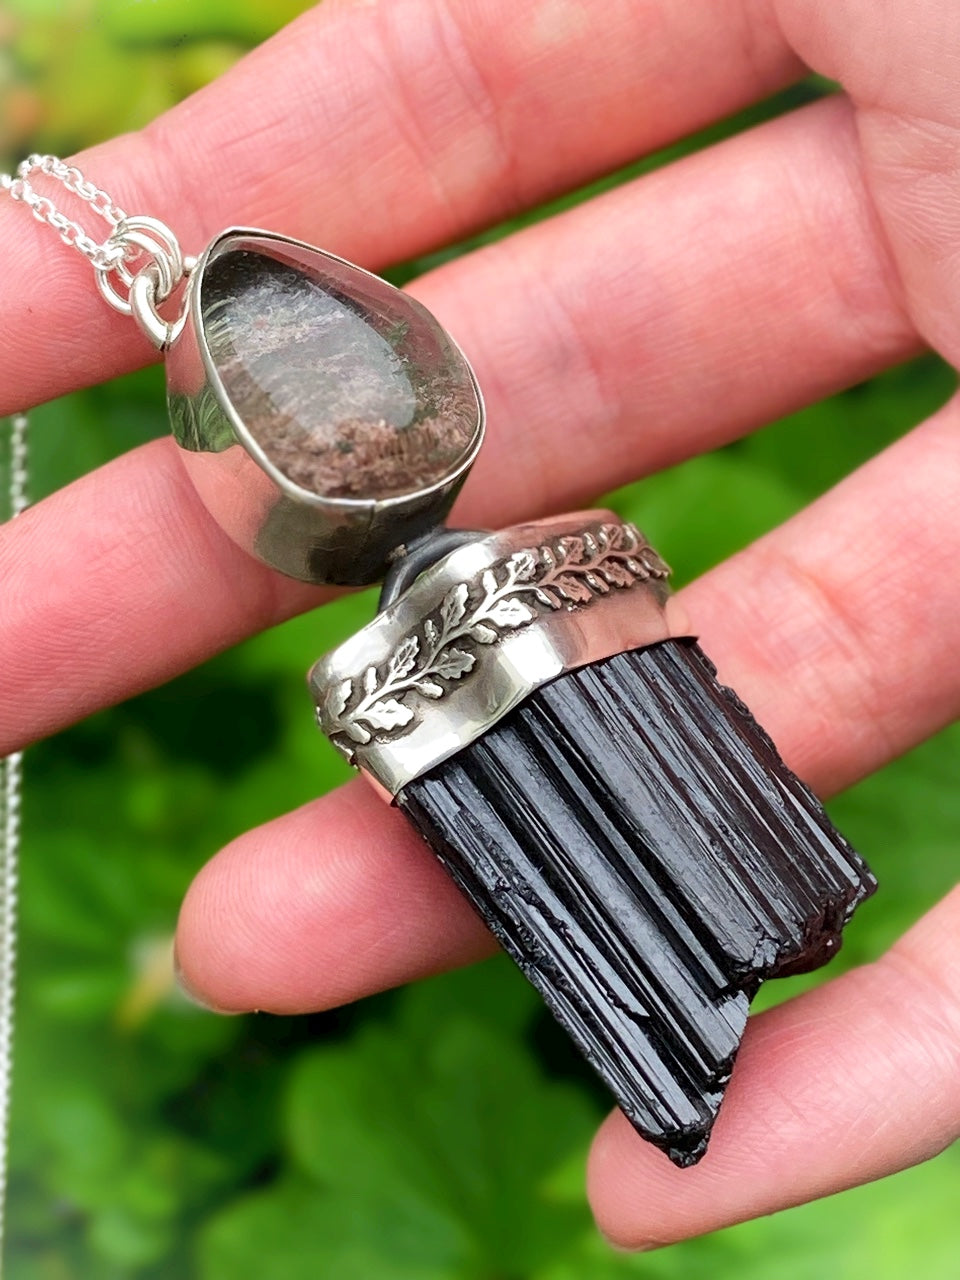 ꩜SPIRITSTEEL꩜ Handmade Sterling Silver Necklace with Black Tourmaline & Garden Quartz